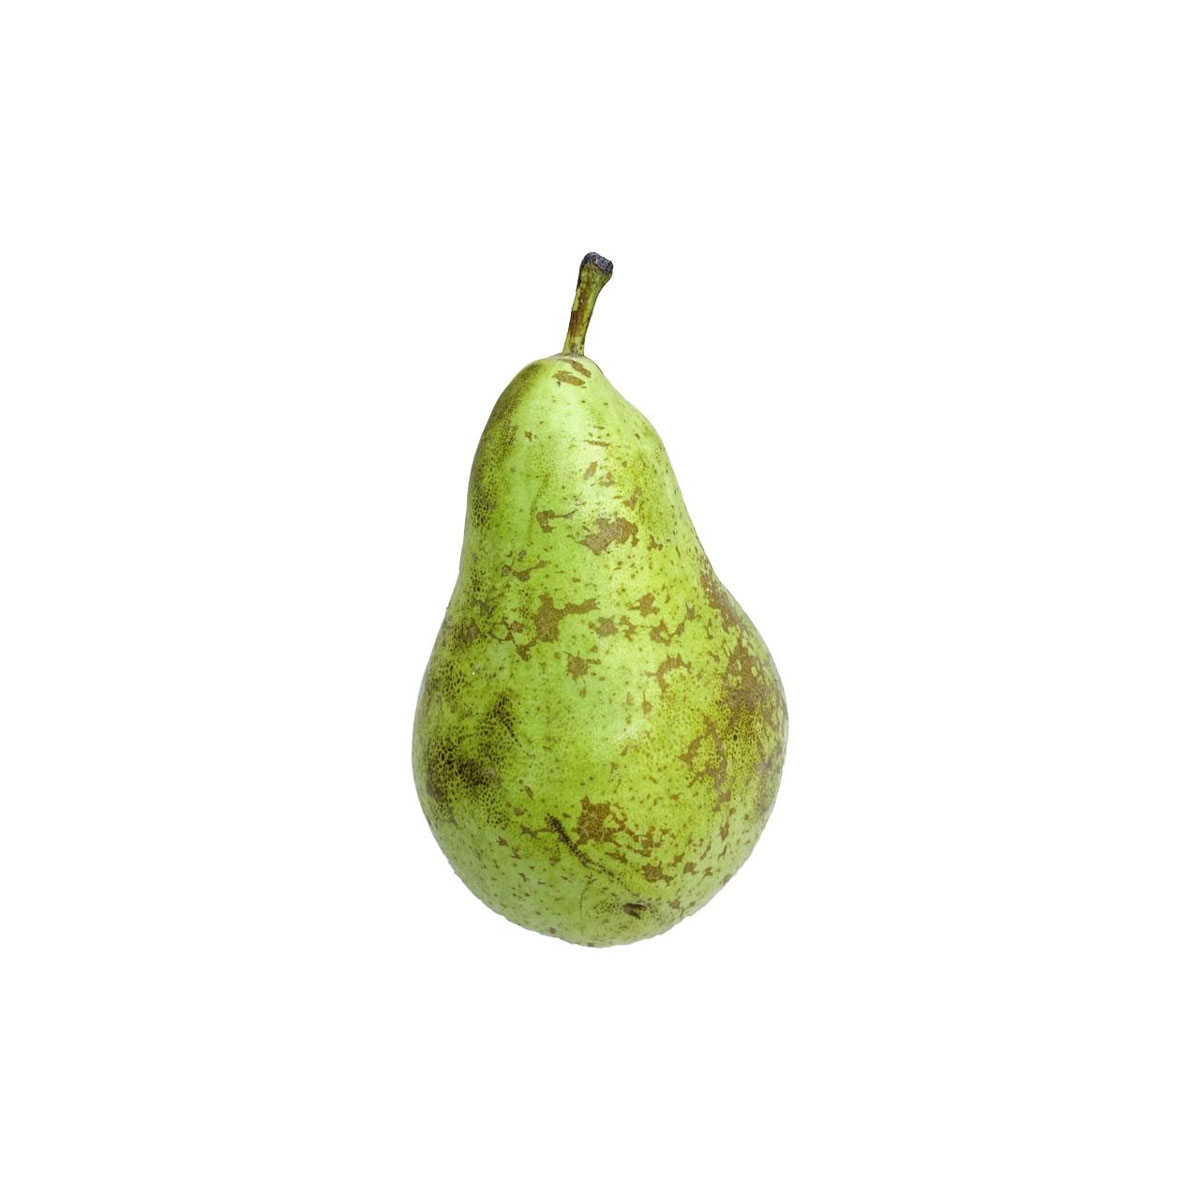 Comprar pera confer 4 pzas kg online de Chef Fruit